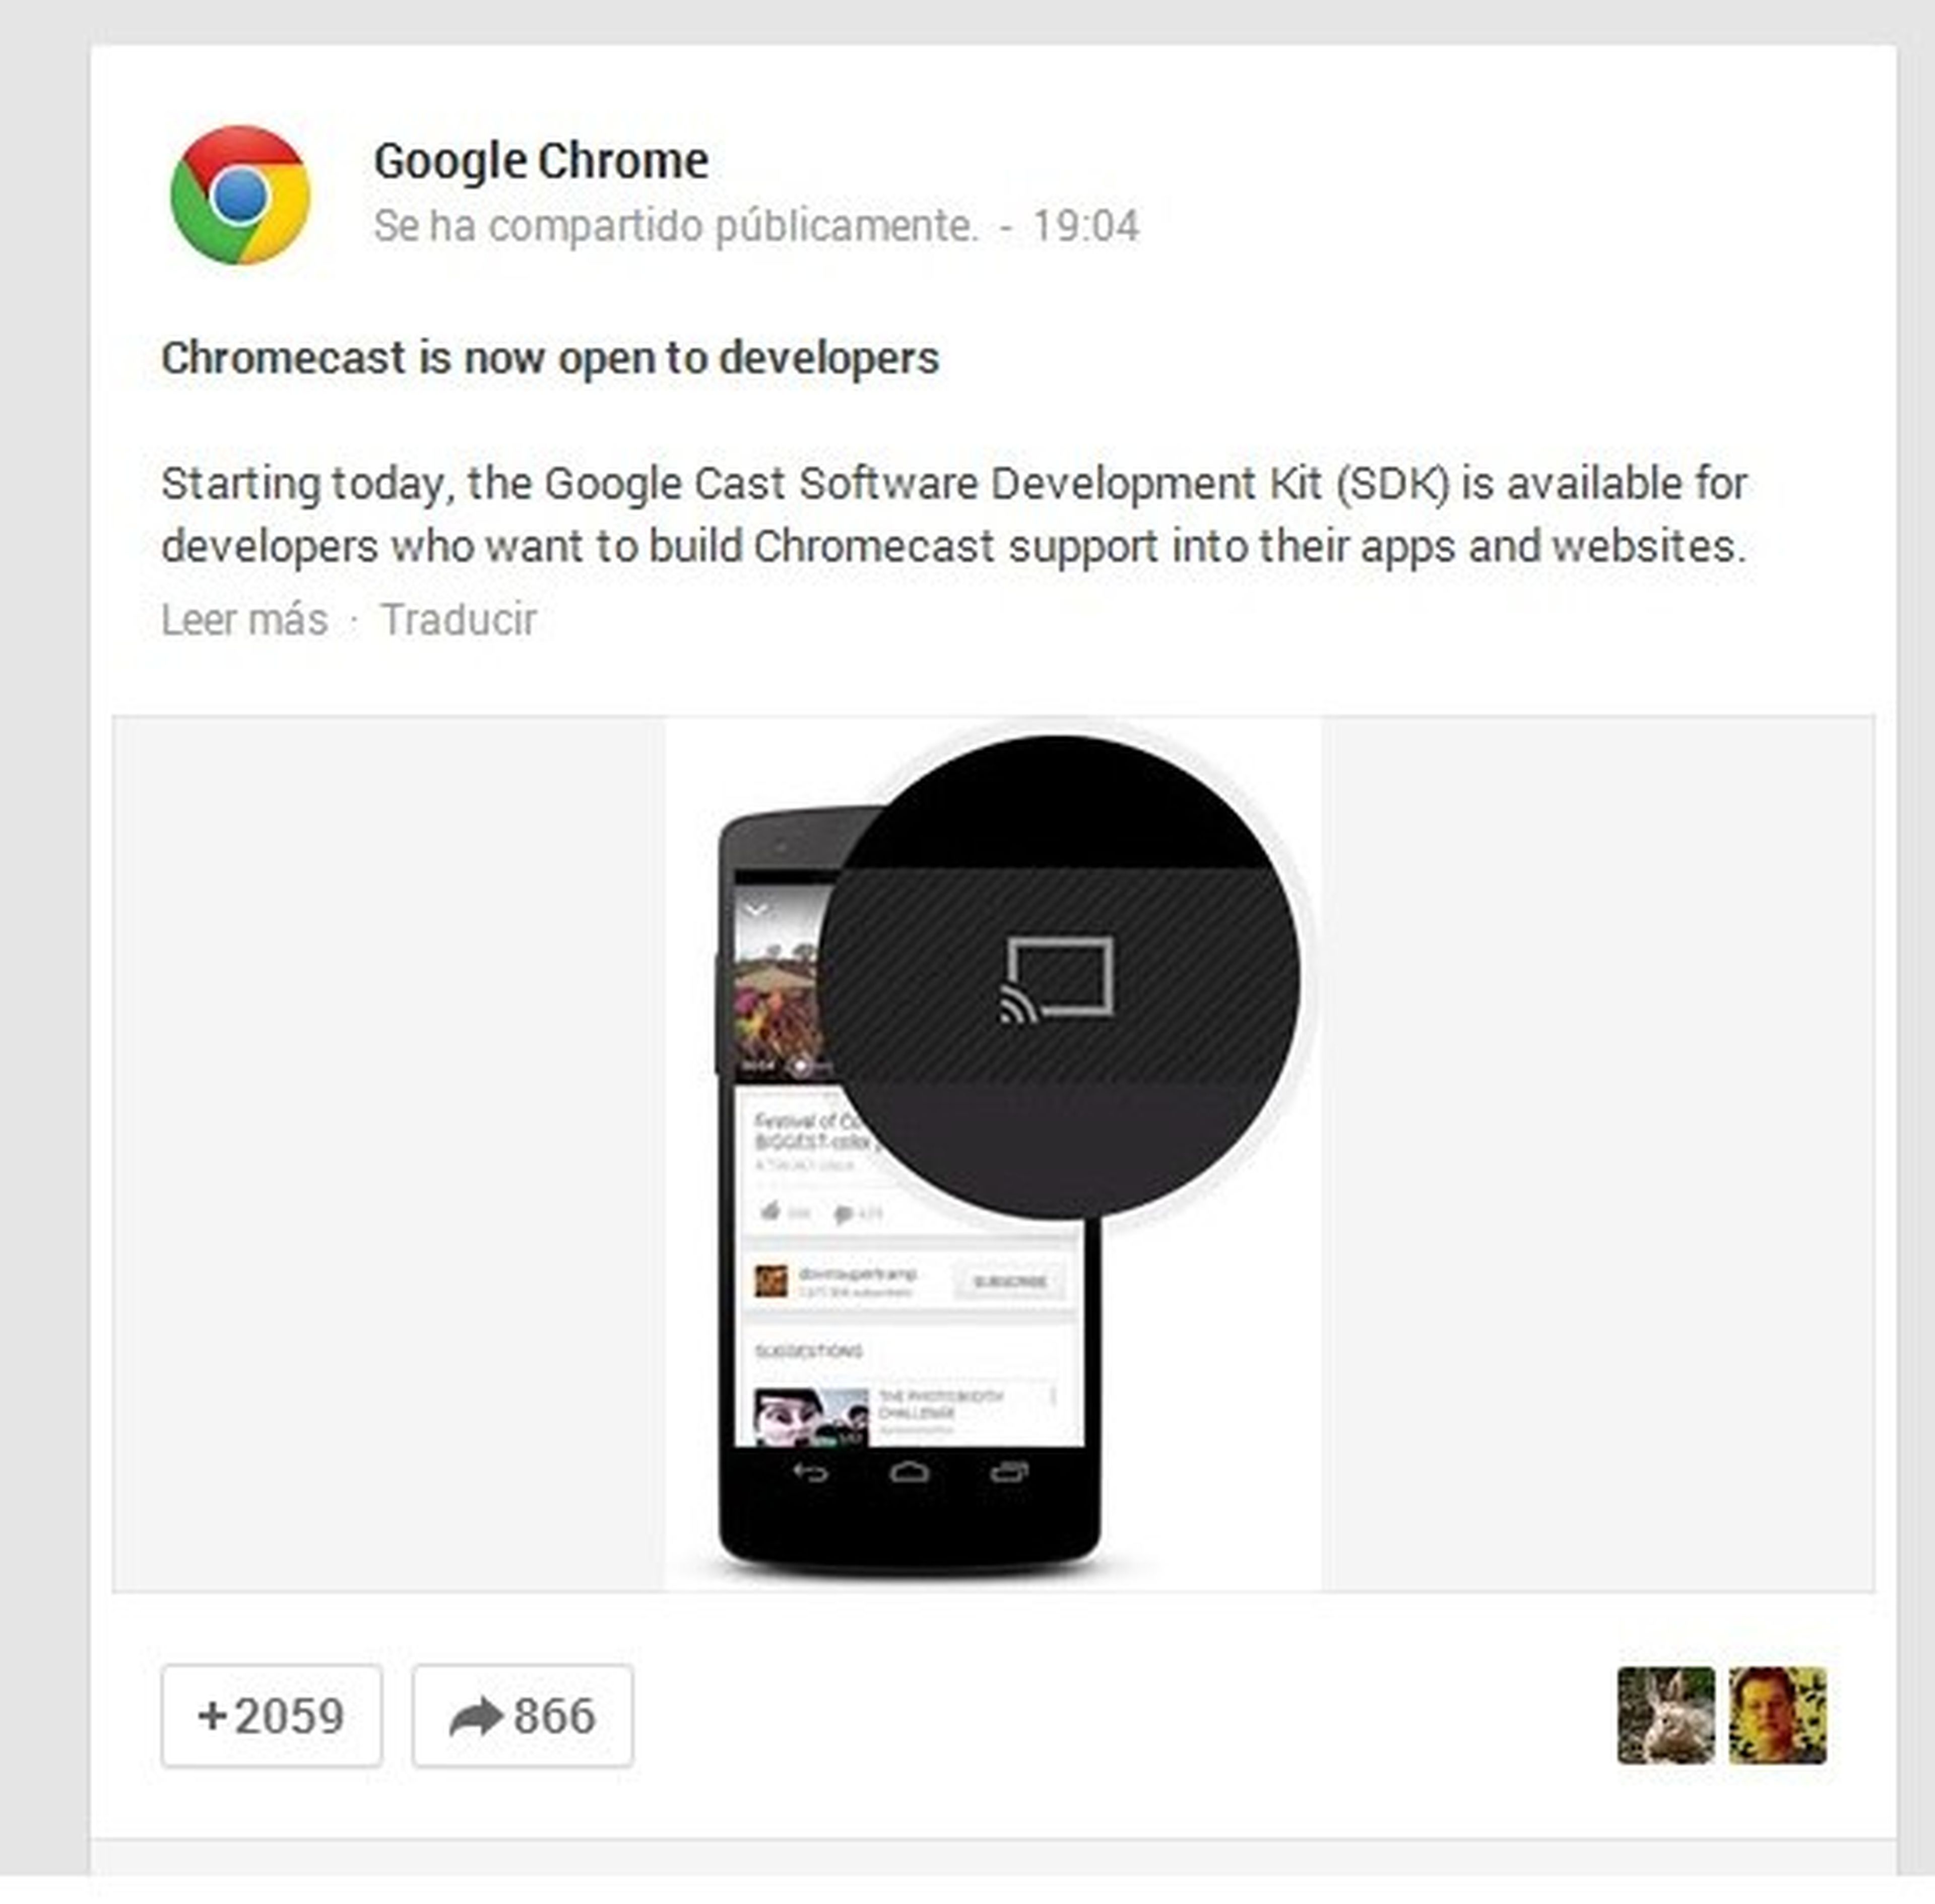 Chromecast de Google abierto para desarrolladores de apps